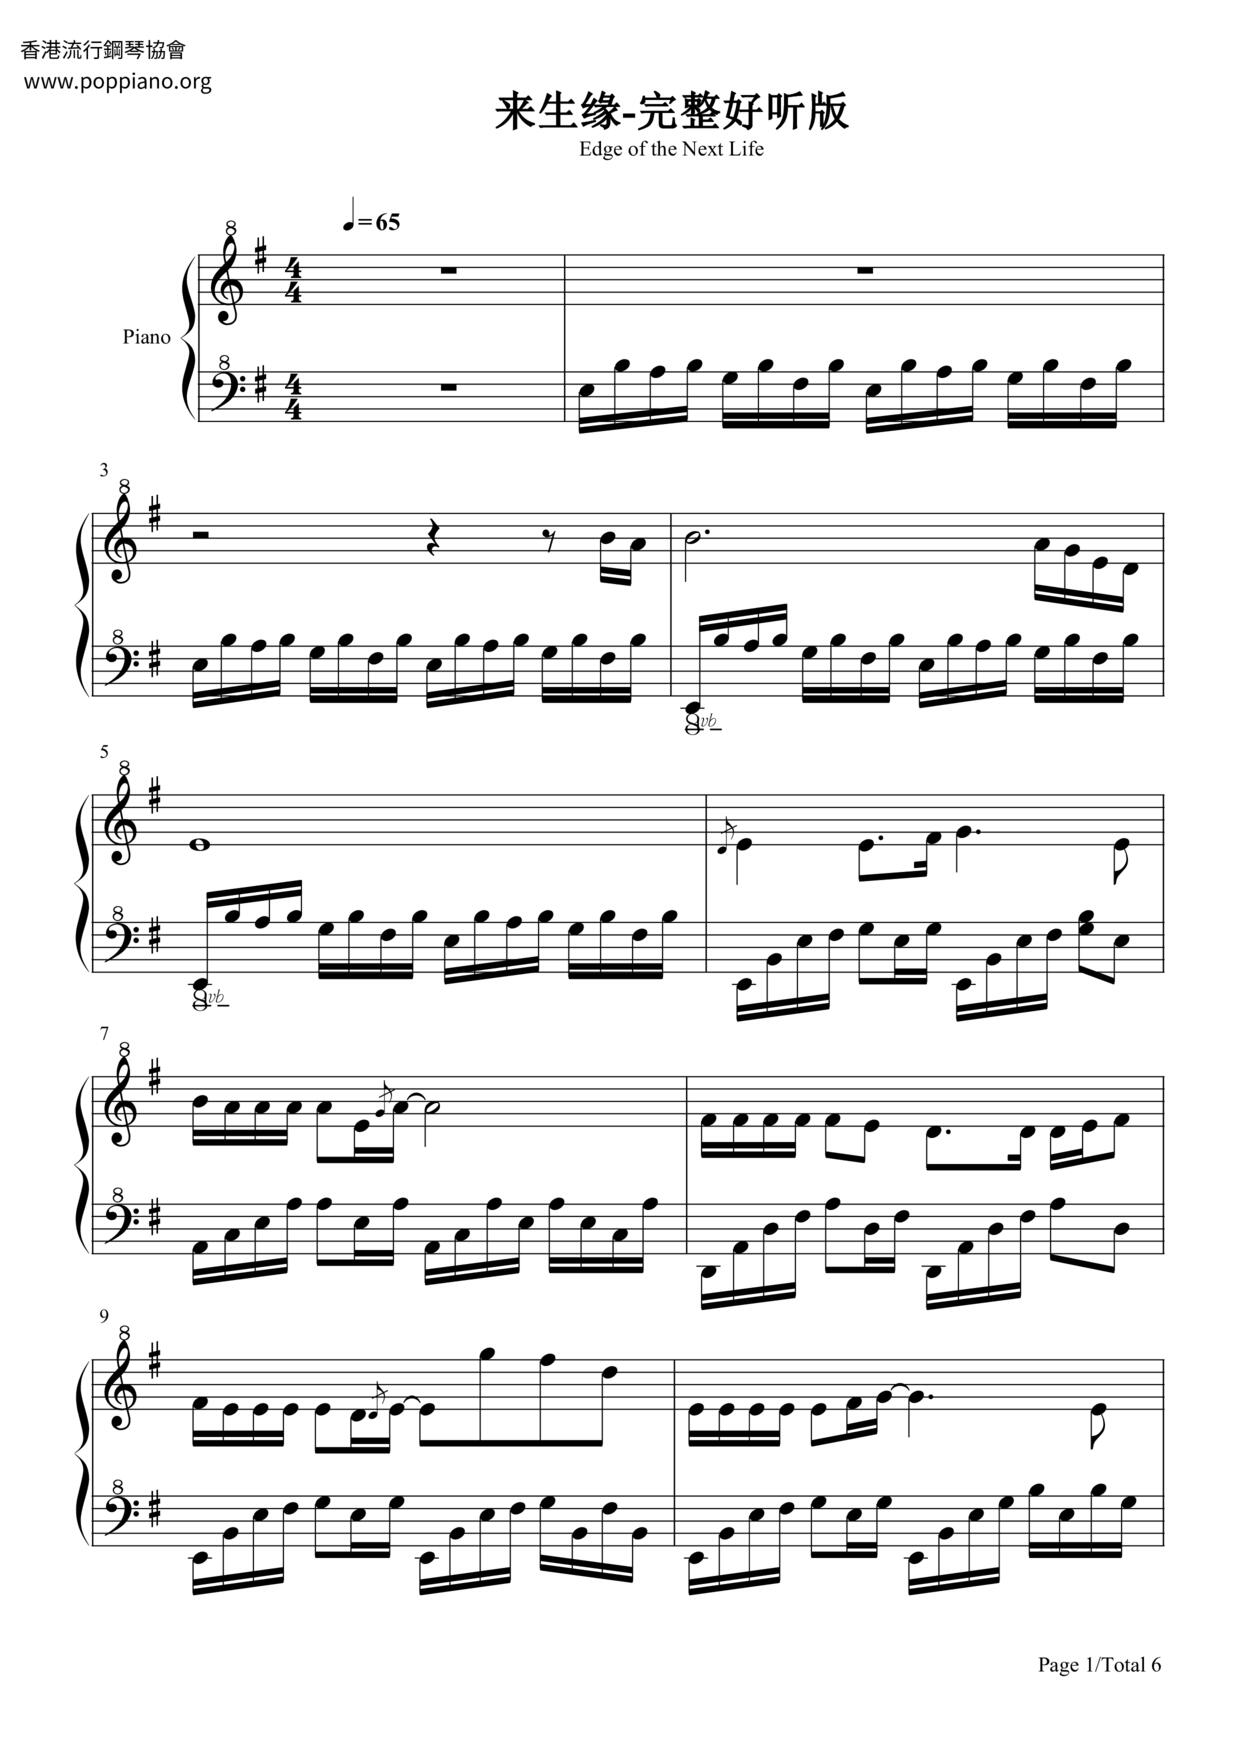 Lai Sheng Yuan Score